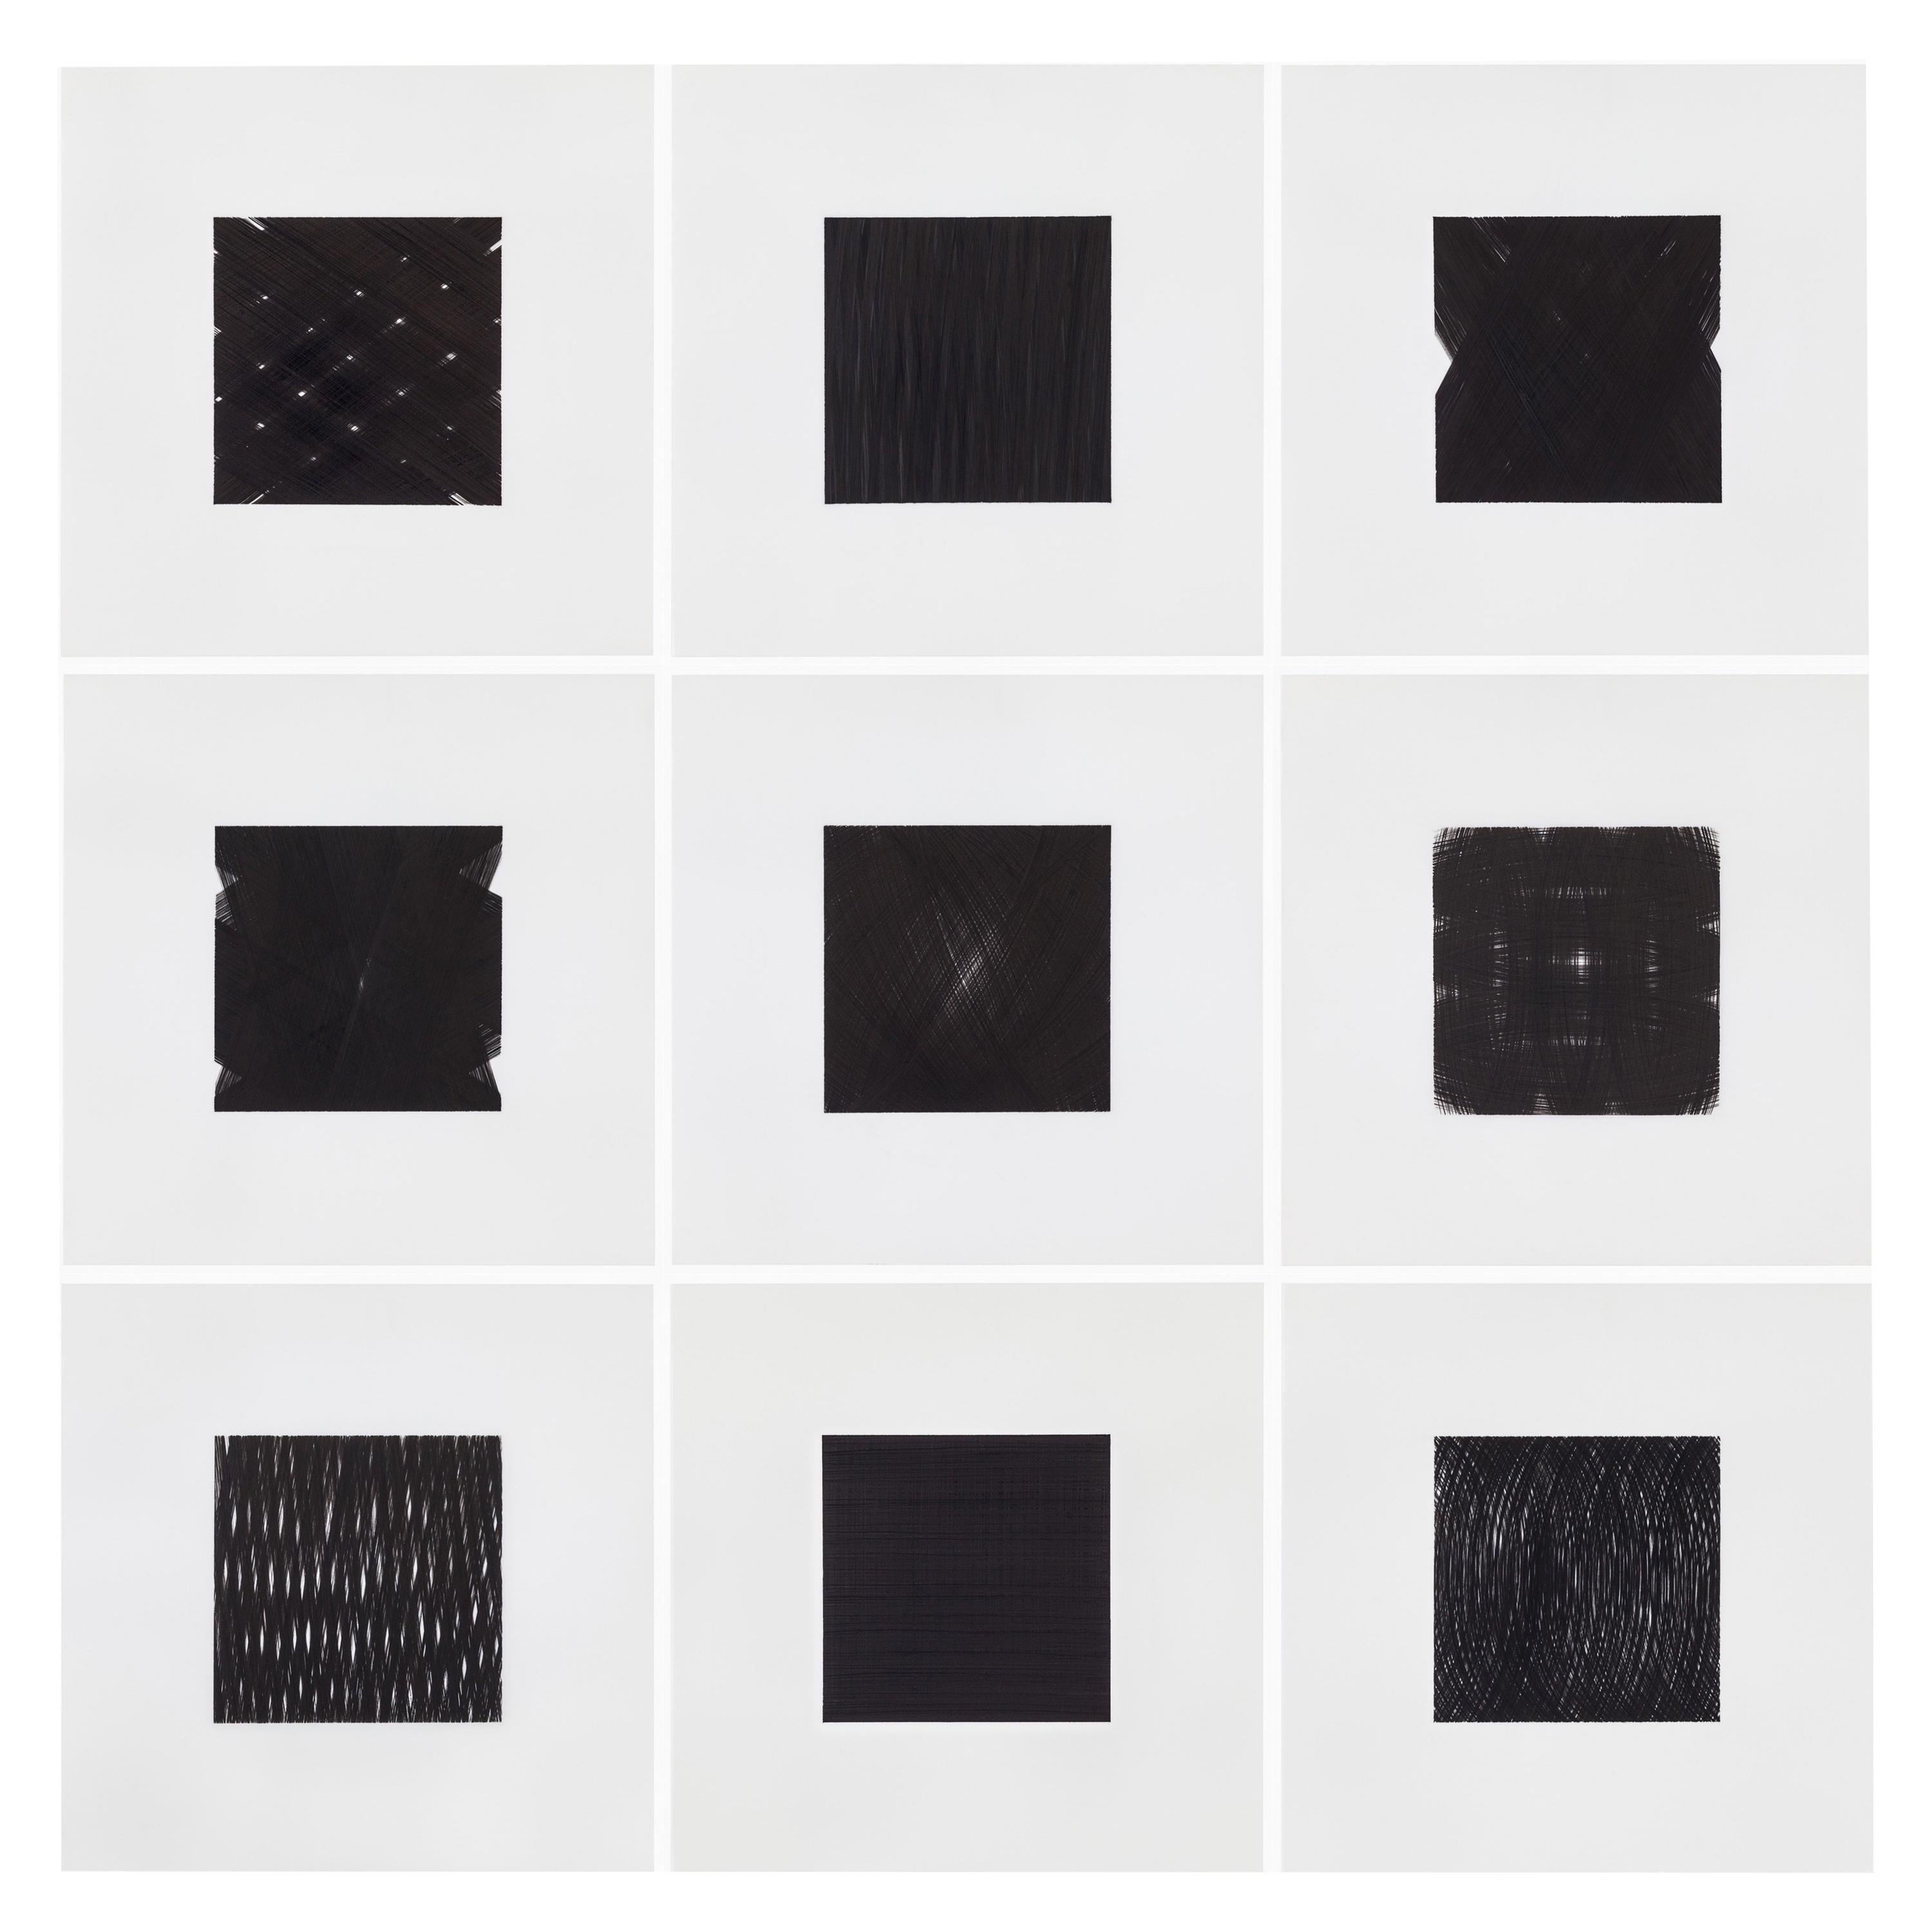 Patrick Carrara Schwarze Tinte auf Mylar-Zeichnungen, Appearance-Serie, 2013 - 2015